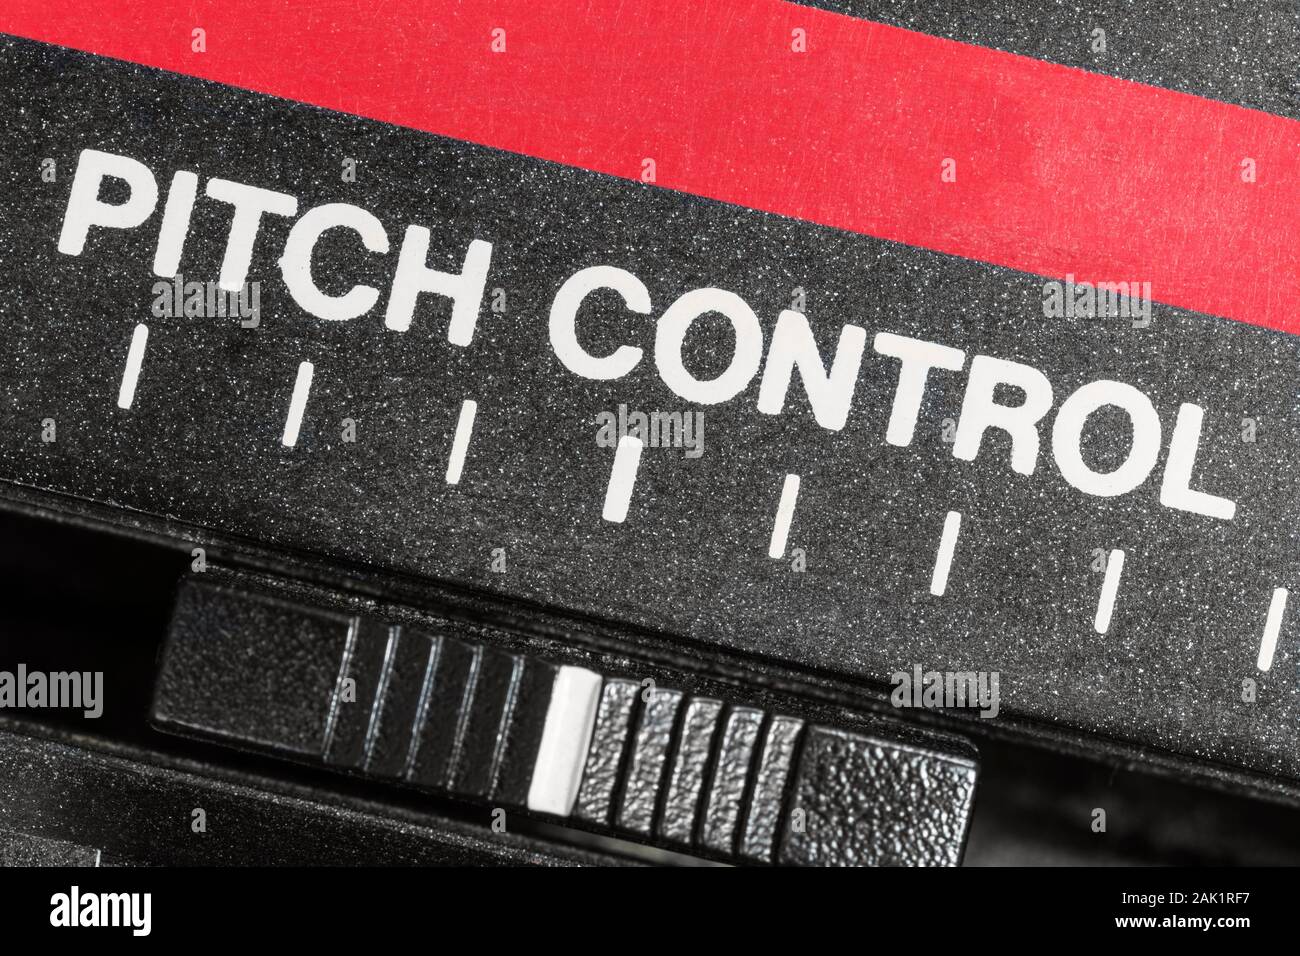 Makro Nahaufnahme von Vintage Pitch control Bandmaschine Schieberegler Geschwindigkeit. Stockfoto